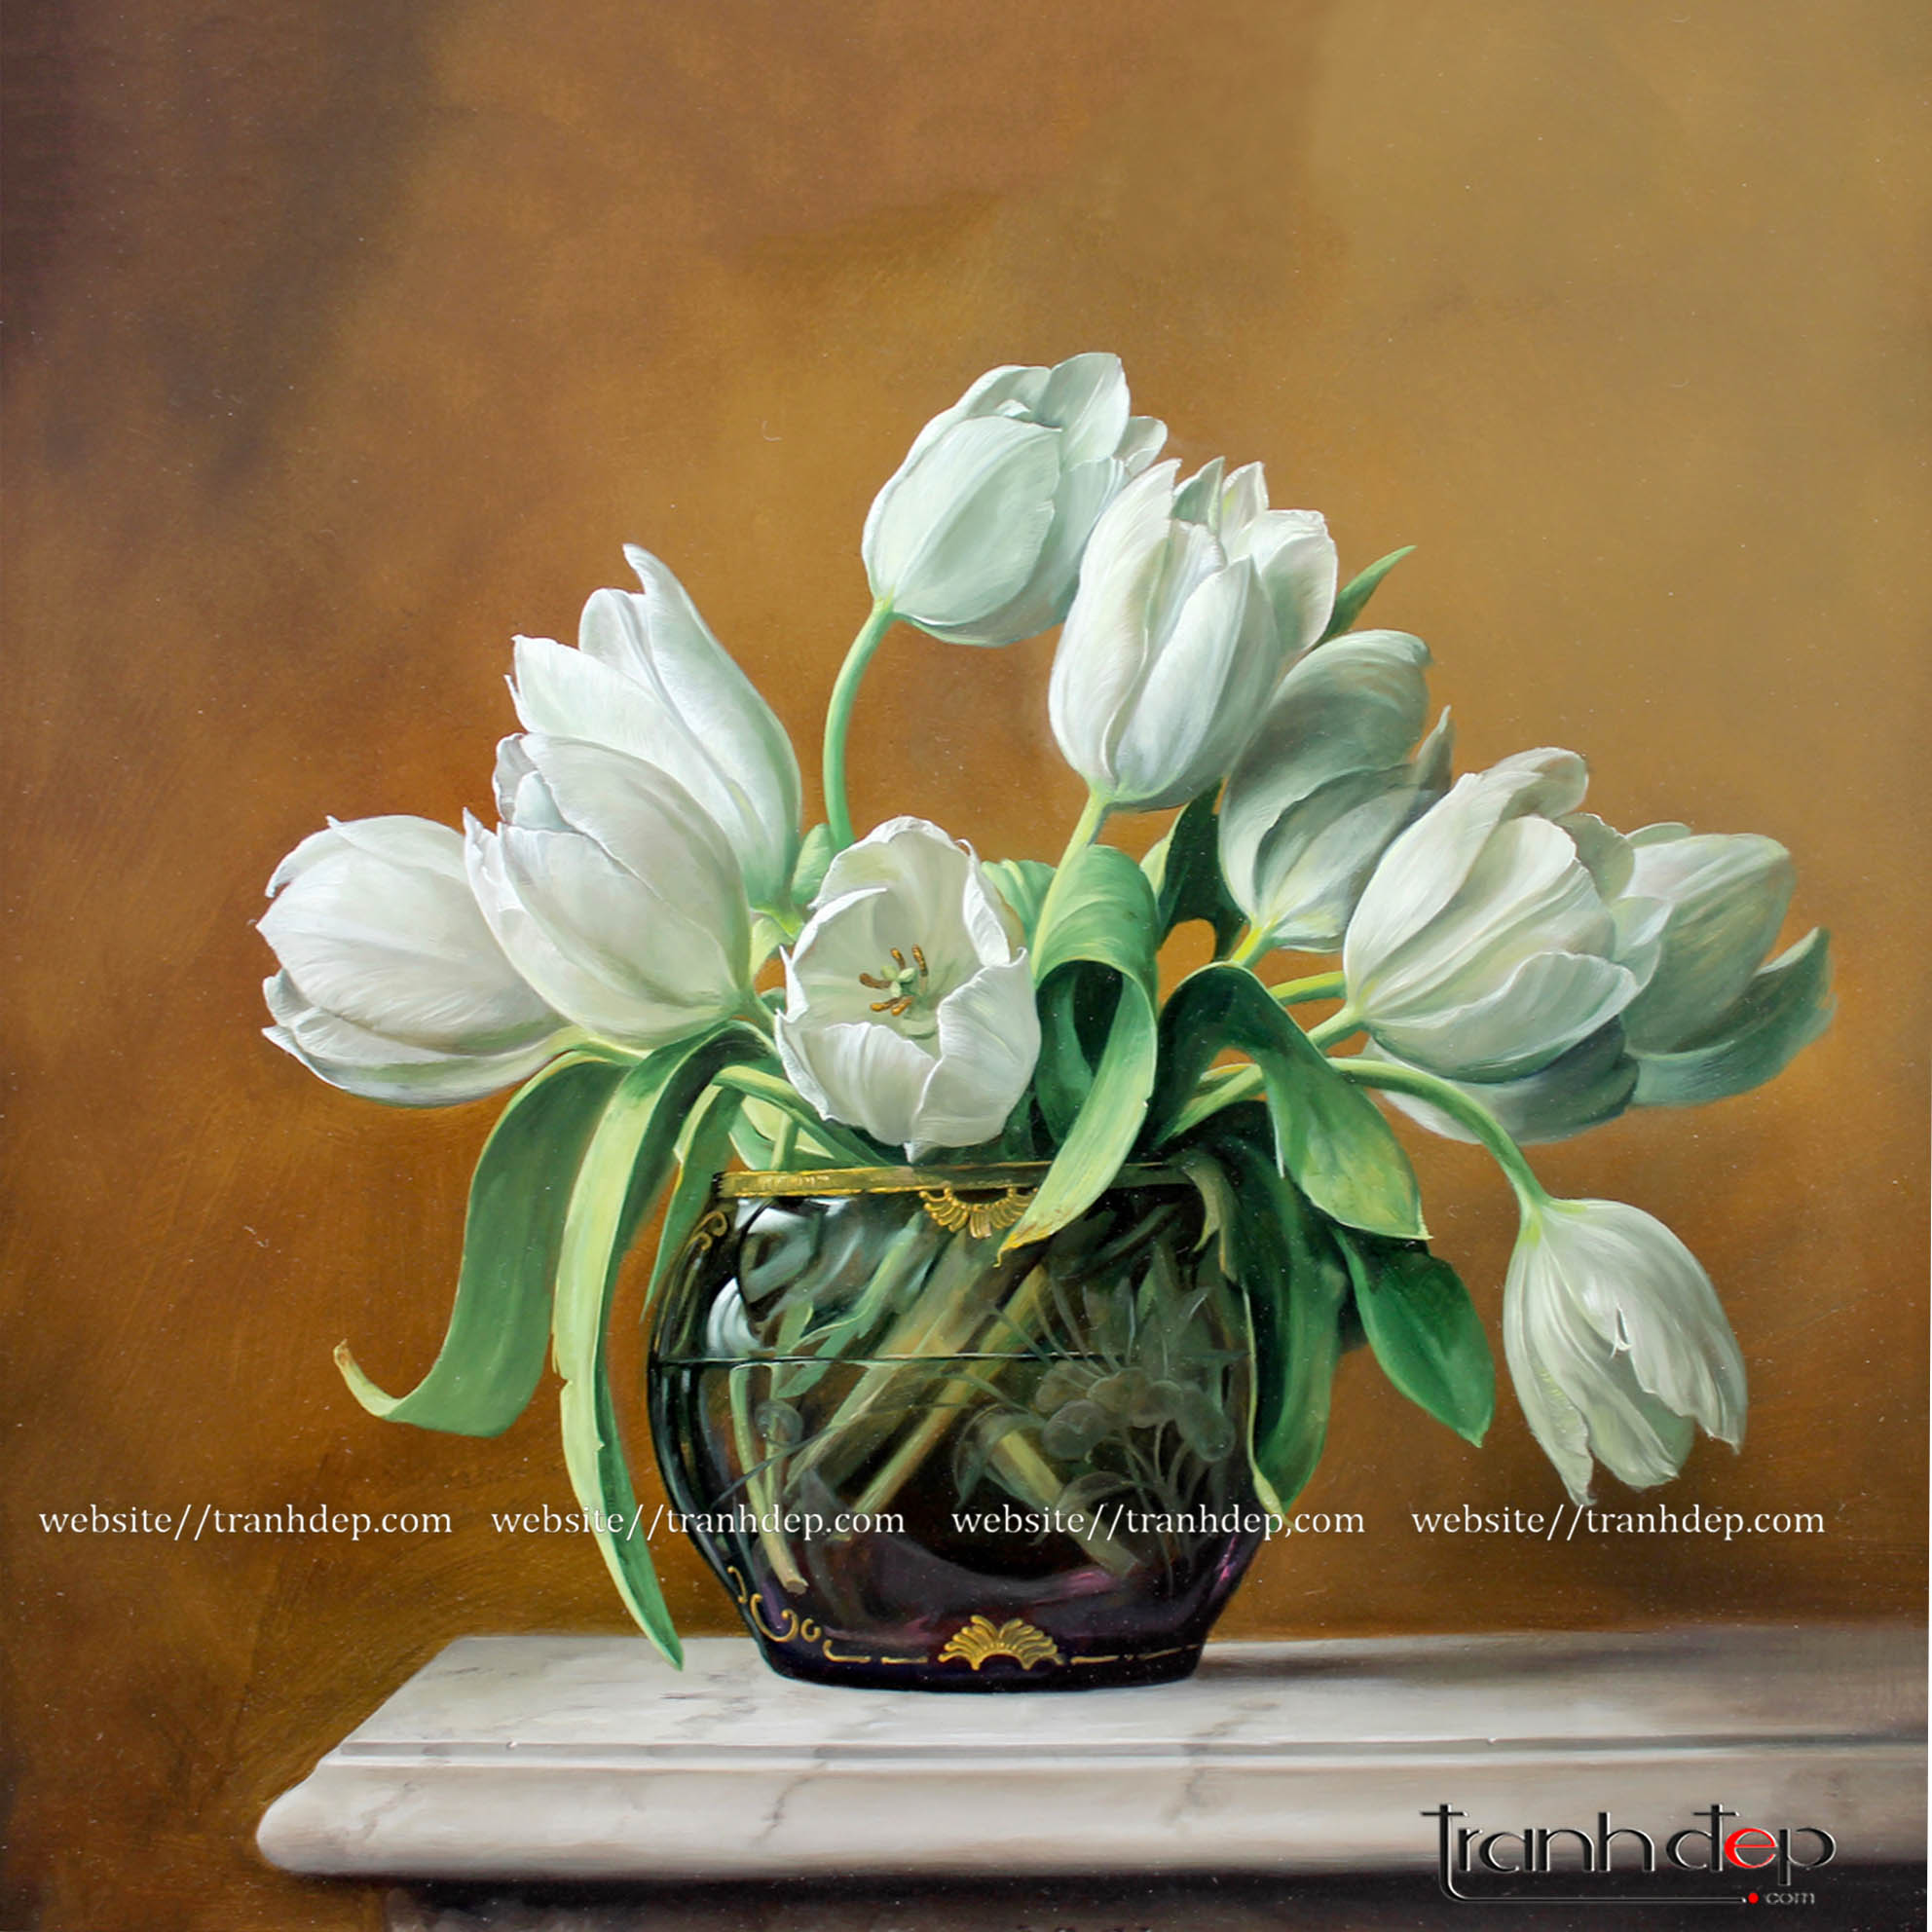 Những bông hoa tulip xinh đẹp với giá cả hấp dẫn sẽ làm bạn không thể bỏ qua. Với sự đa dạng về màu sắc và kiểu dáng, chắc chắn bạn sẽ tìm thấy một bông hoa tulip vừa ý mình. Hãy xem hình ảnh để khám phá thêm về những bông hoa tulip giá rẻ đang được yêu thích.